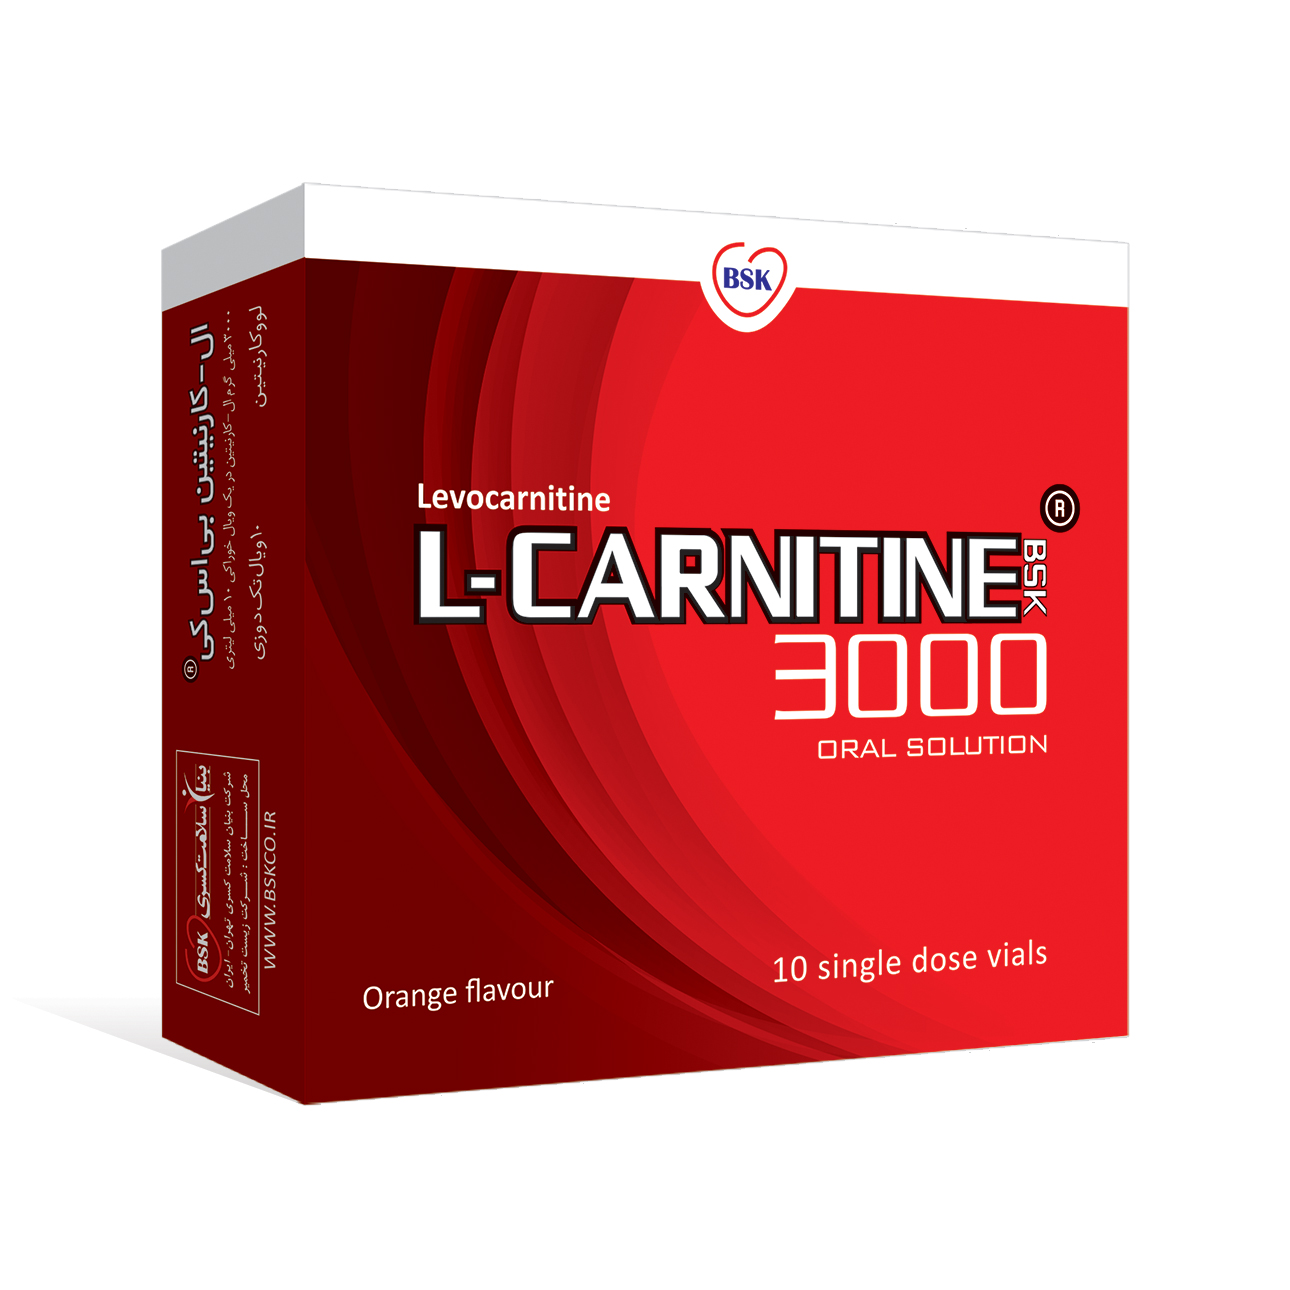 L-CARNITINE 3000®